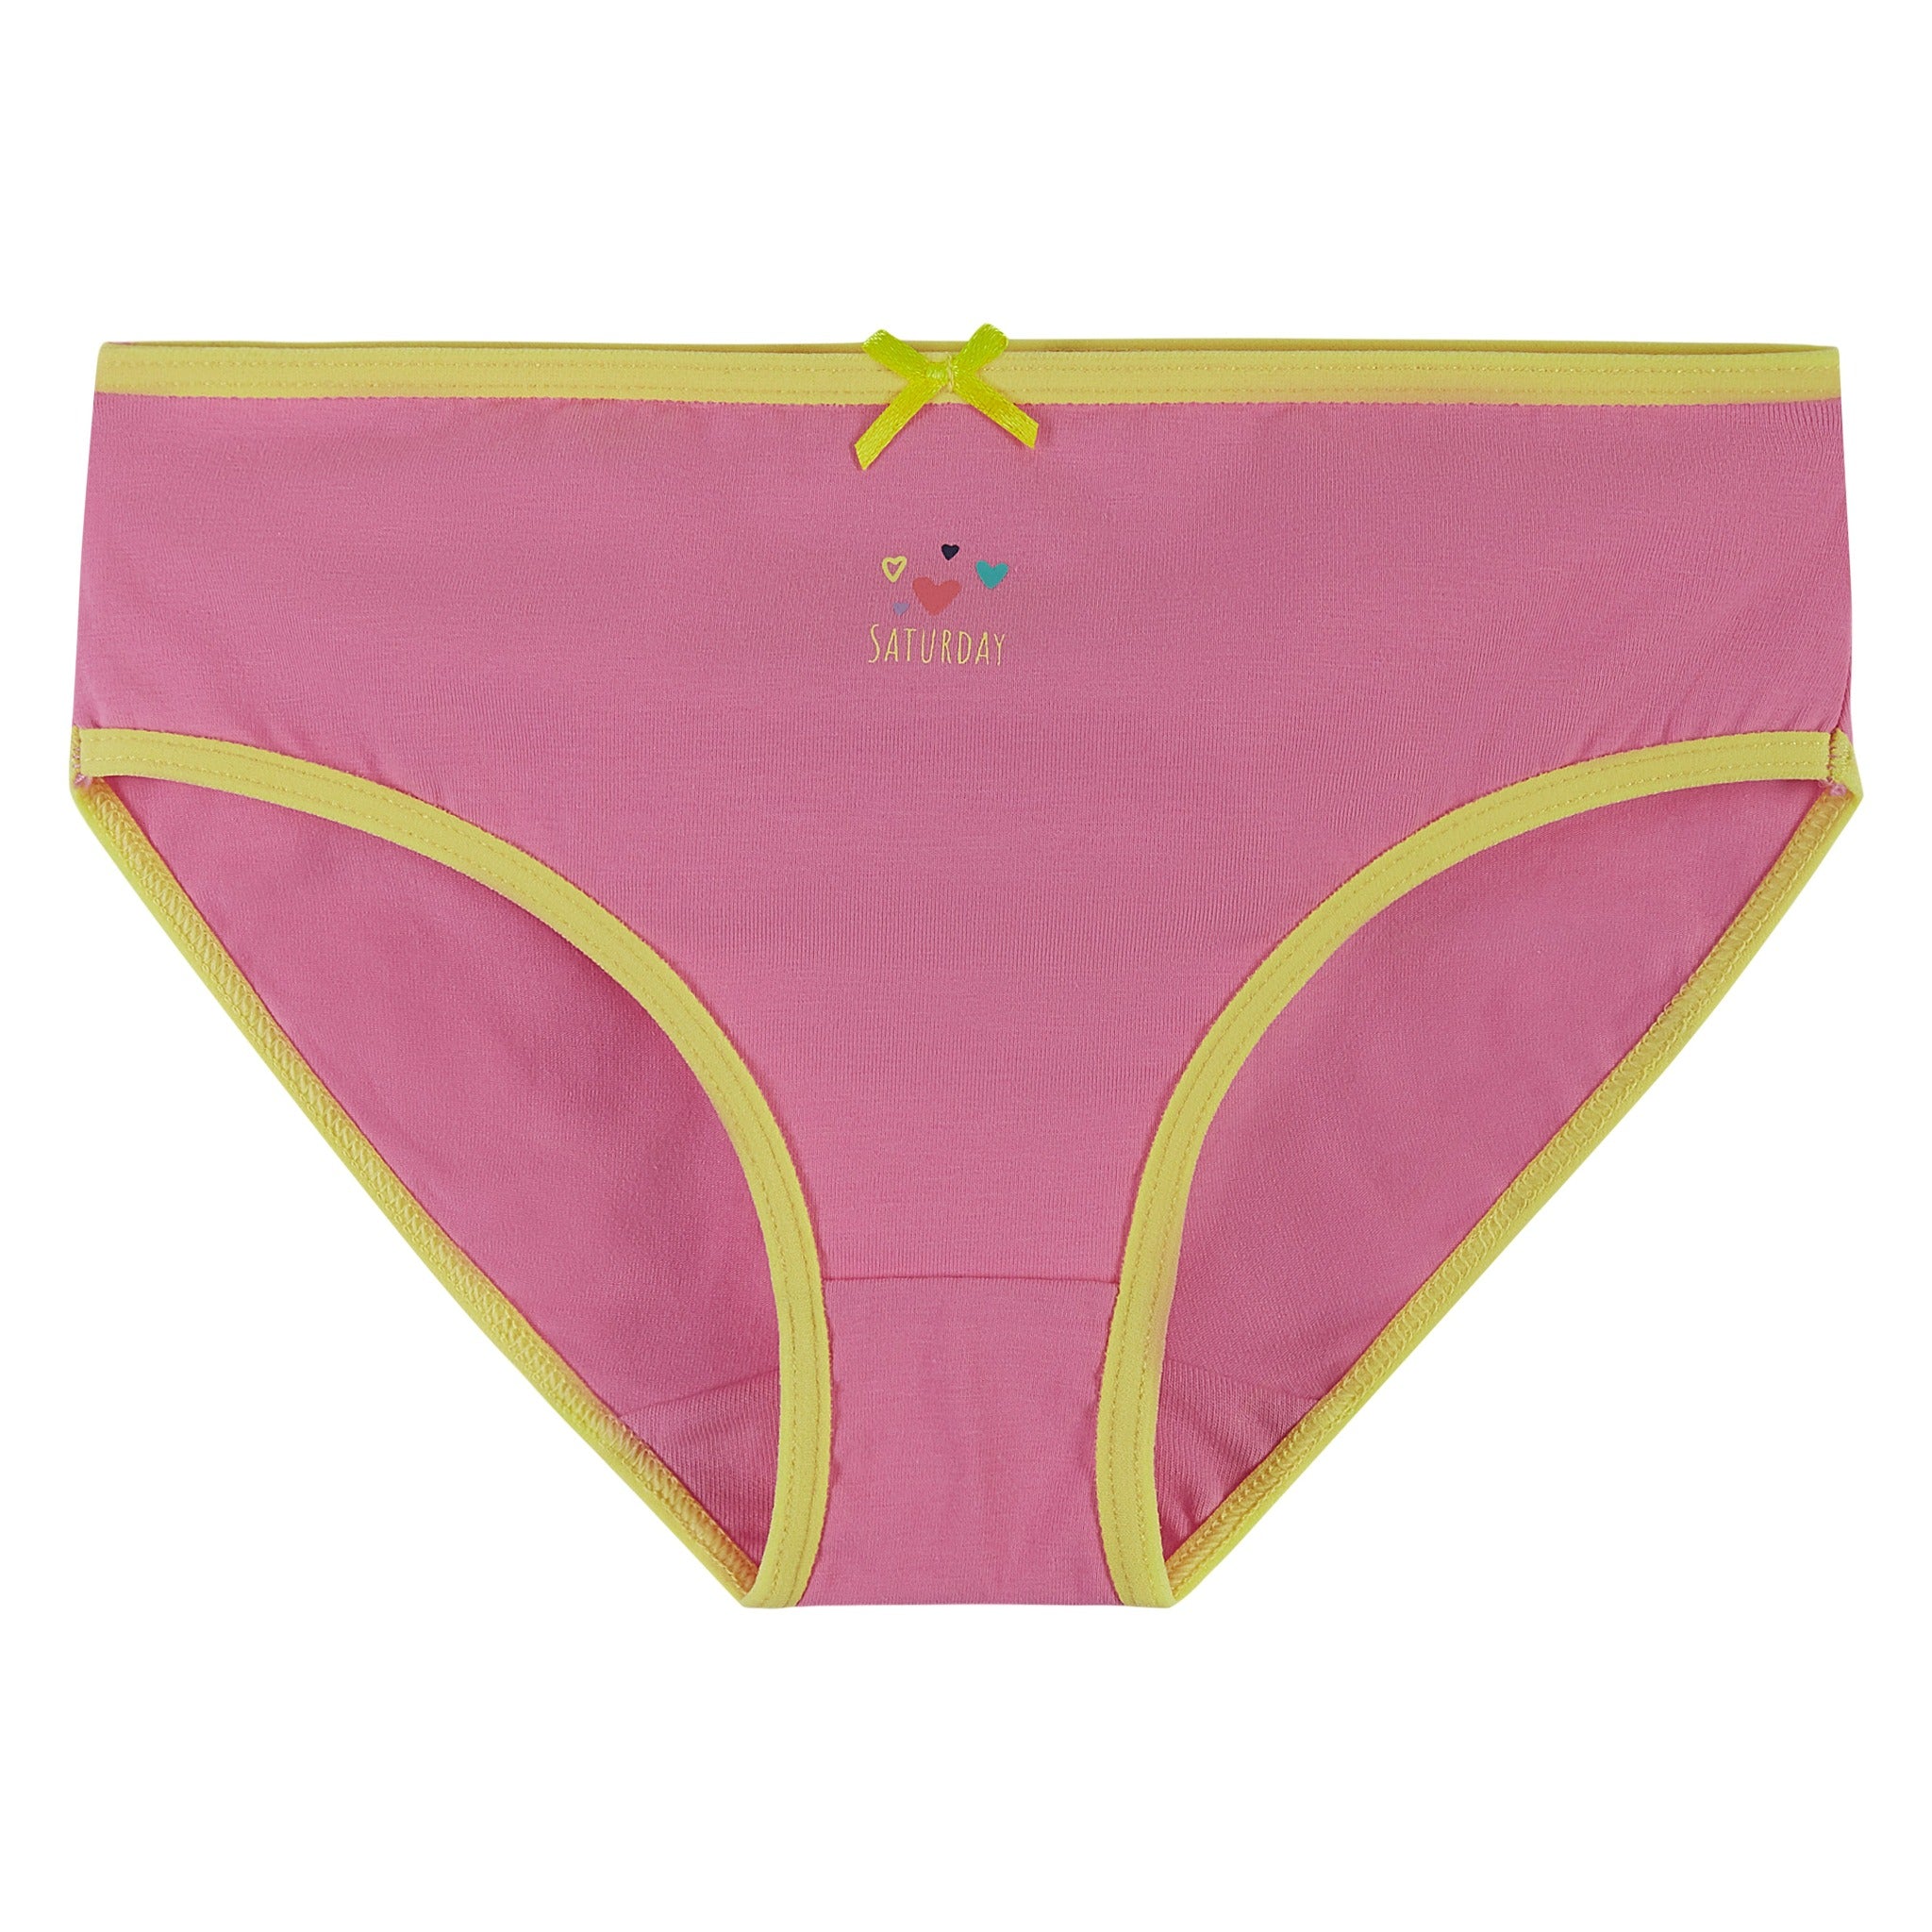 Fvwitlyh Wonderbra Bra Wire Underwear Bra Underwear Solid Women'S Pink,44 